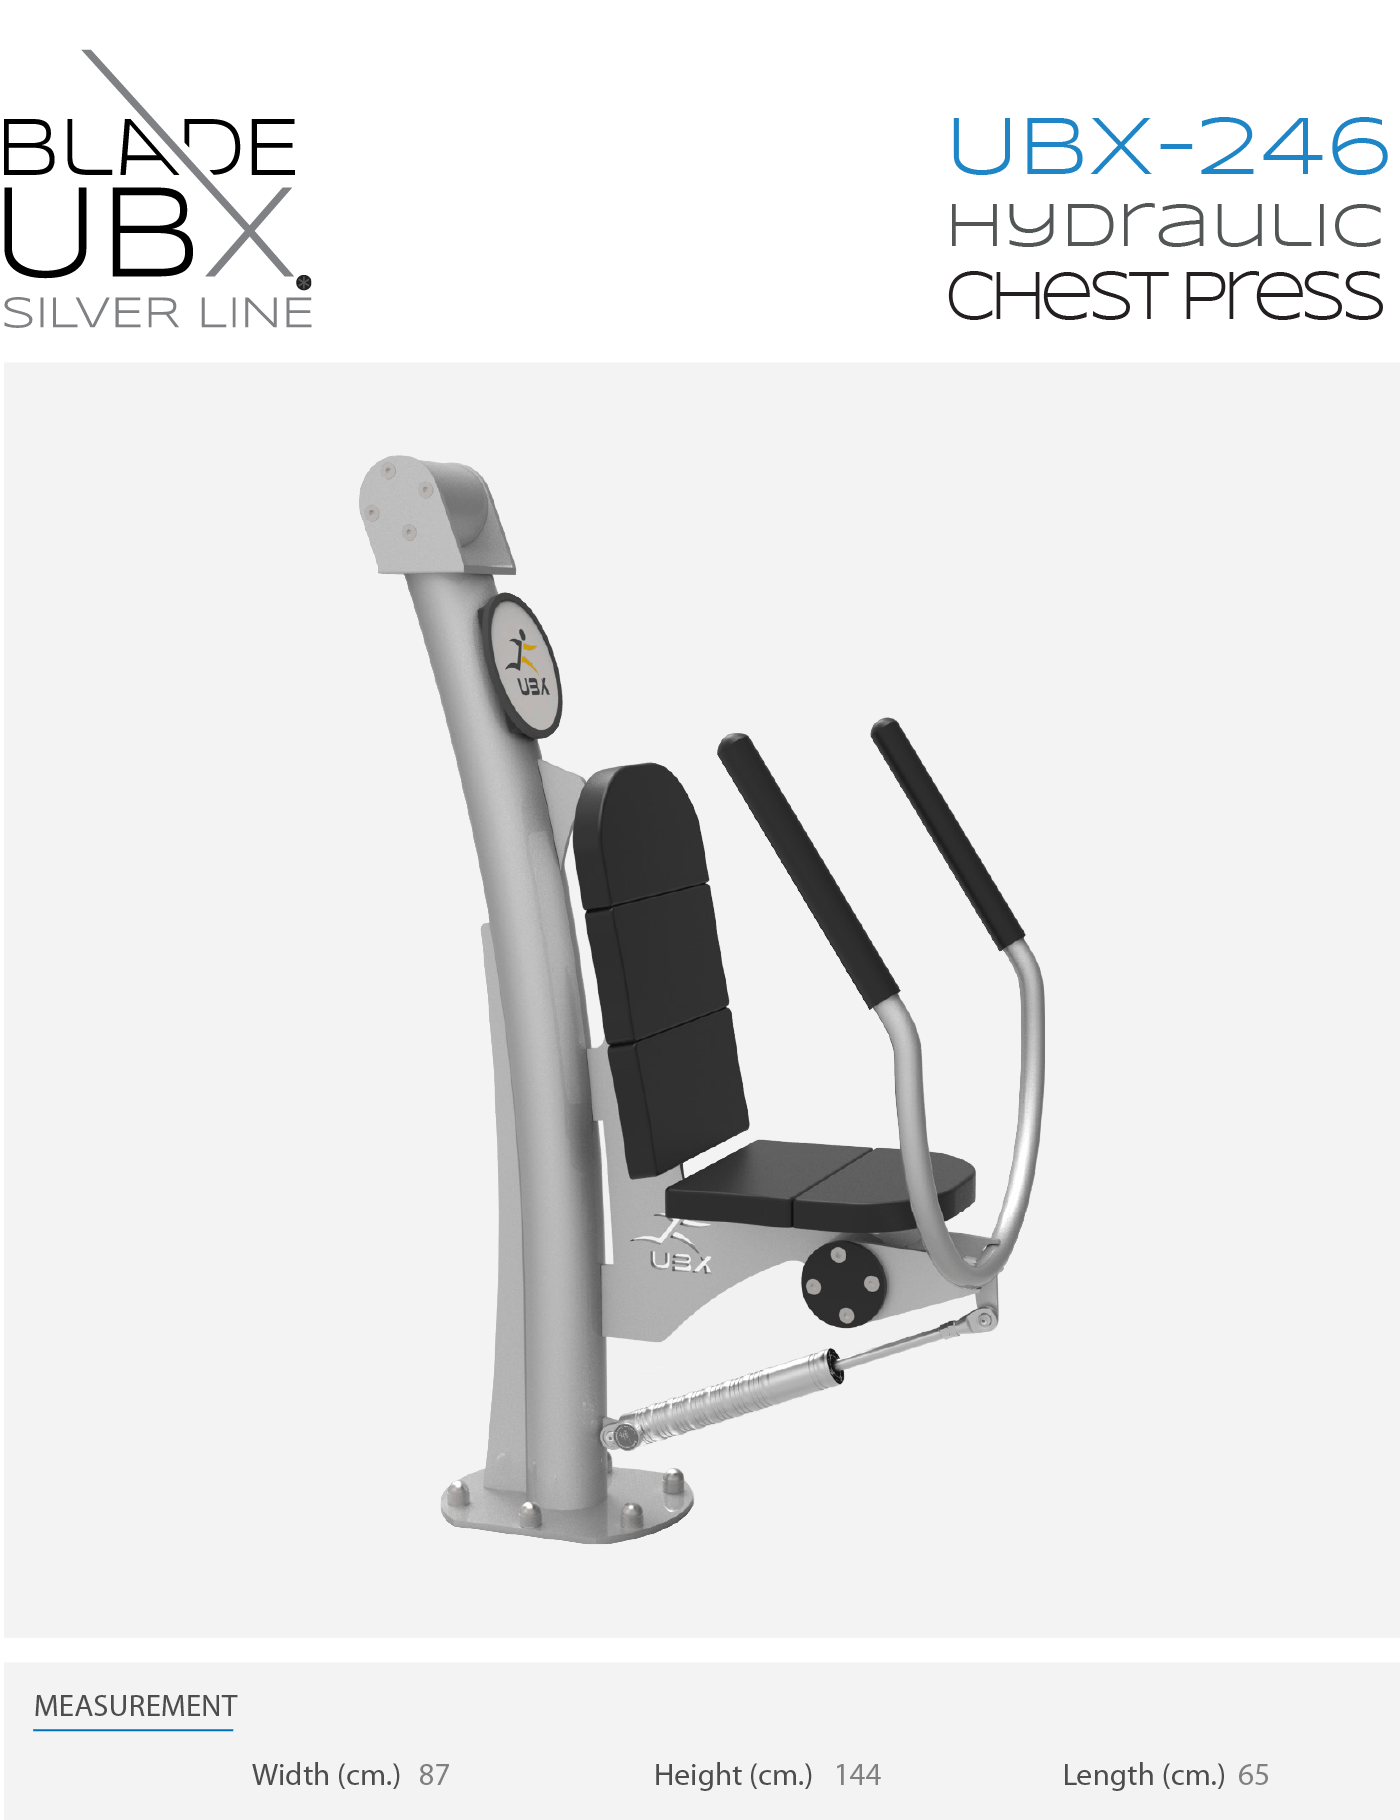 ubx-246 hydraulic chest press - אורבניקס - מתקן כושר - מאמן חתירה הידראולי